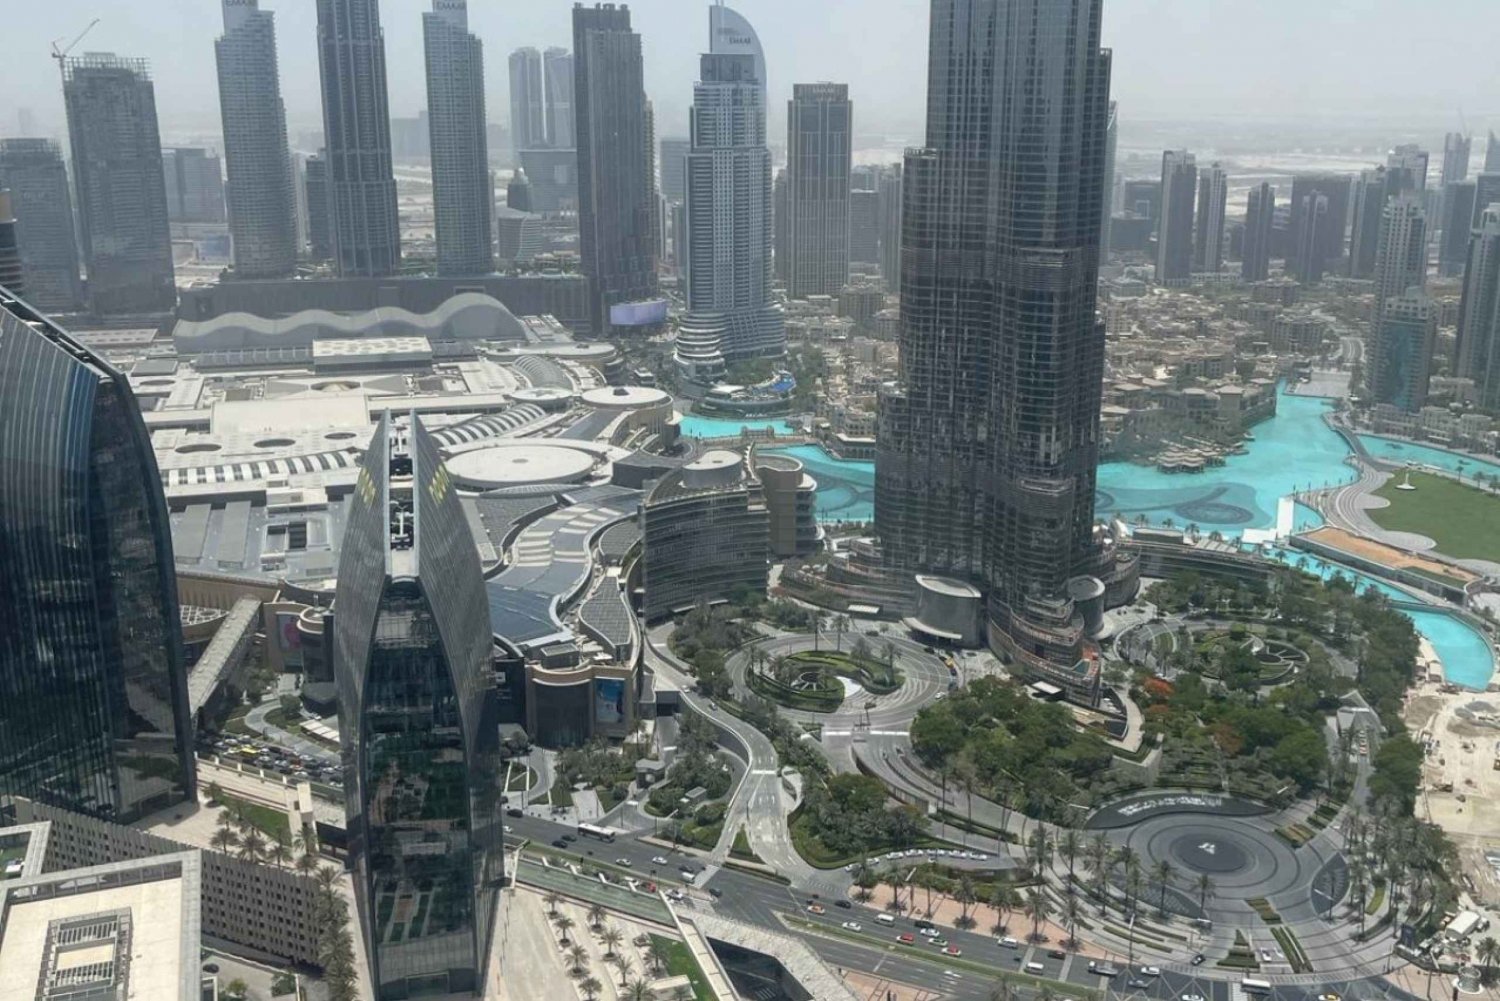 Ontdek Dubai in een luxe huurauto met chauffeur